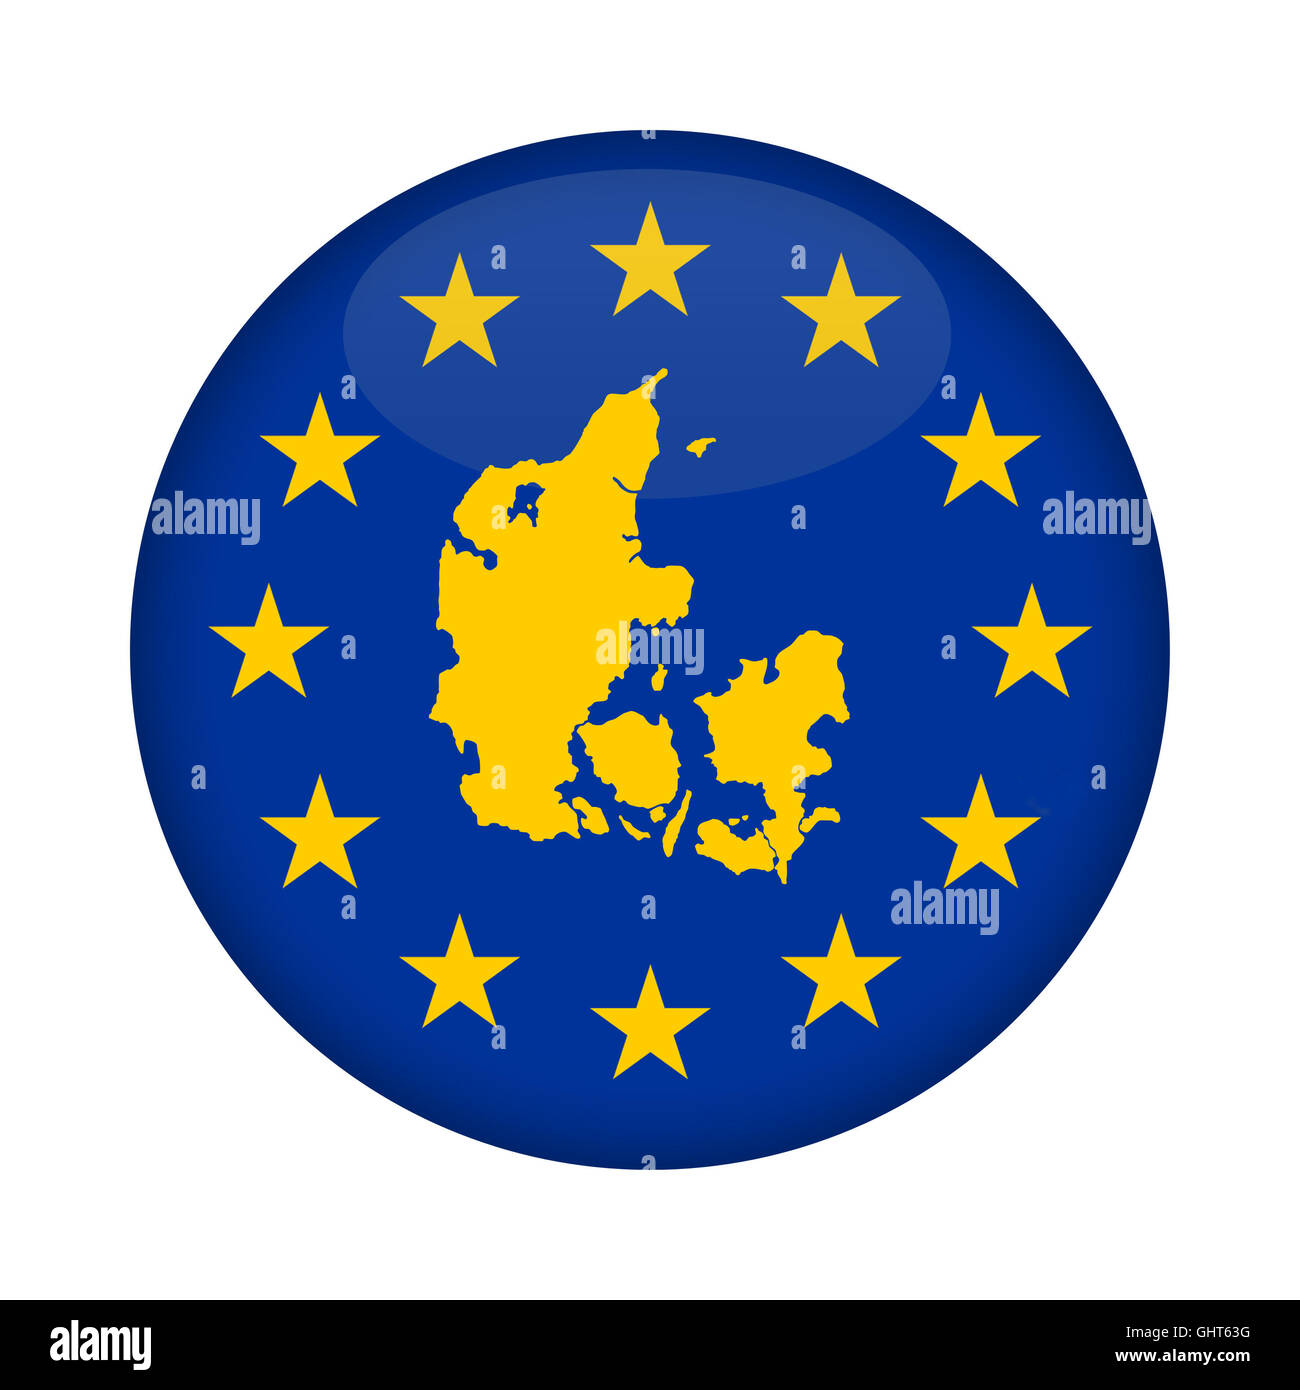 Dänemark-Karte auf eine Europäische Union Flag Taste isoliert auf einem weißen Hintergrund. Stockfoto